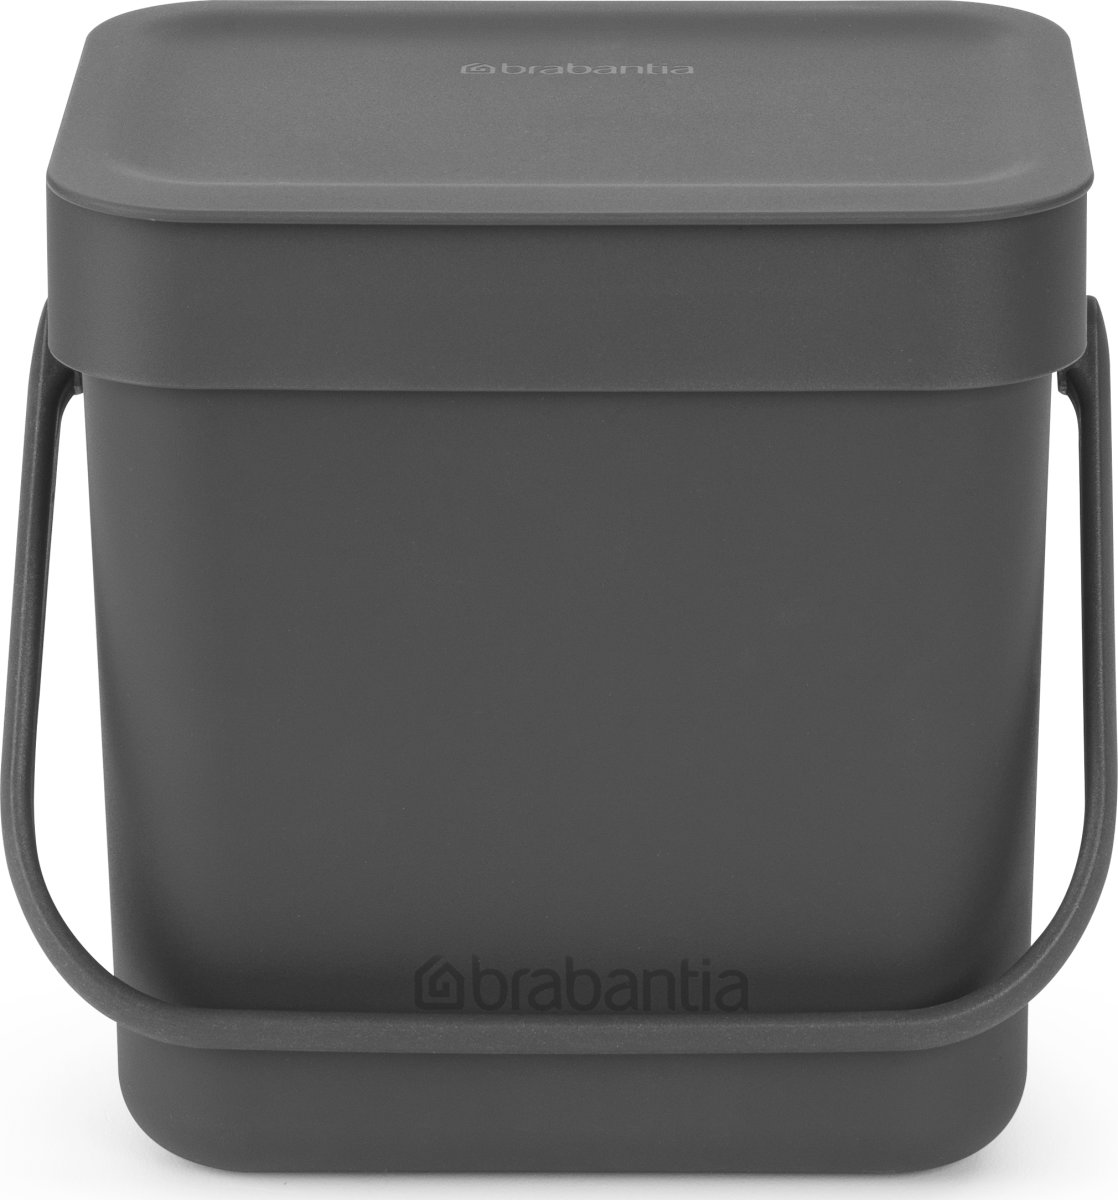 Brabantia Sort&Go avfallshink | 3 liter | Grå